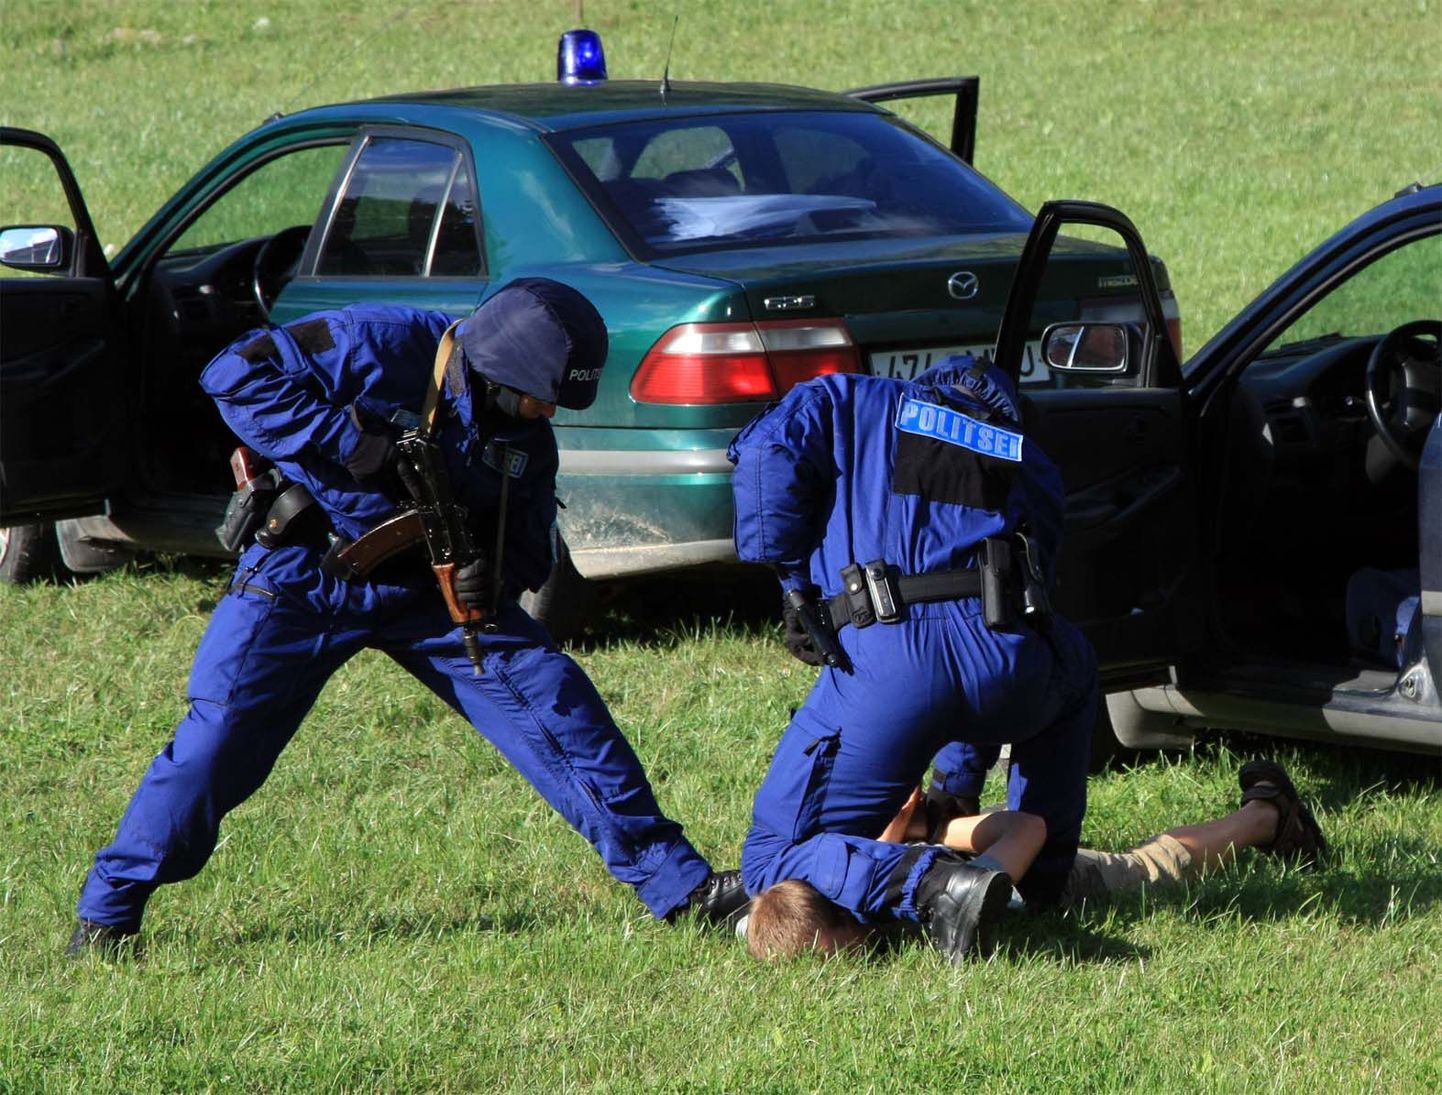 Politsei demontstreerib "kurjategijate" kinnivõtmist. Foto on illustratiivne.